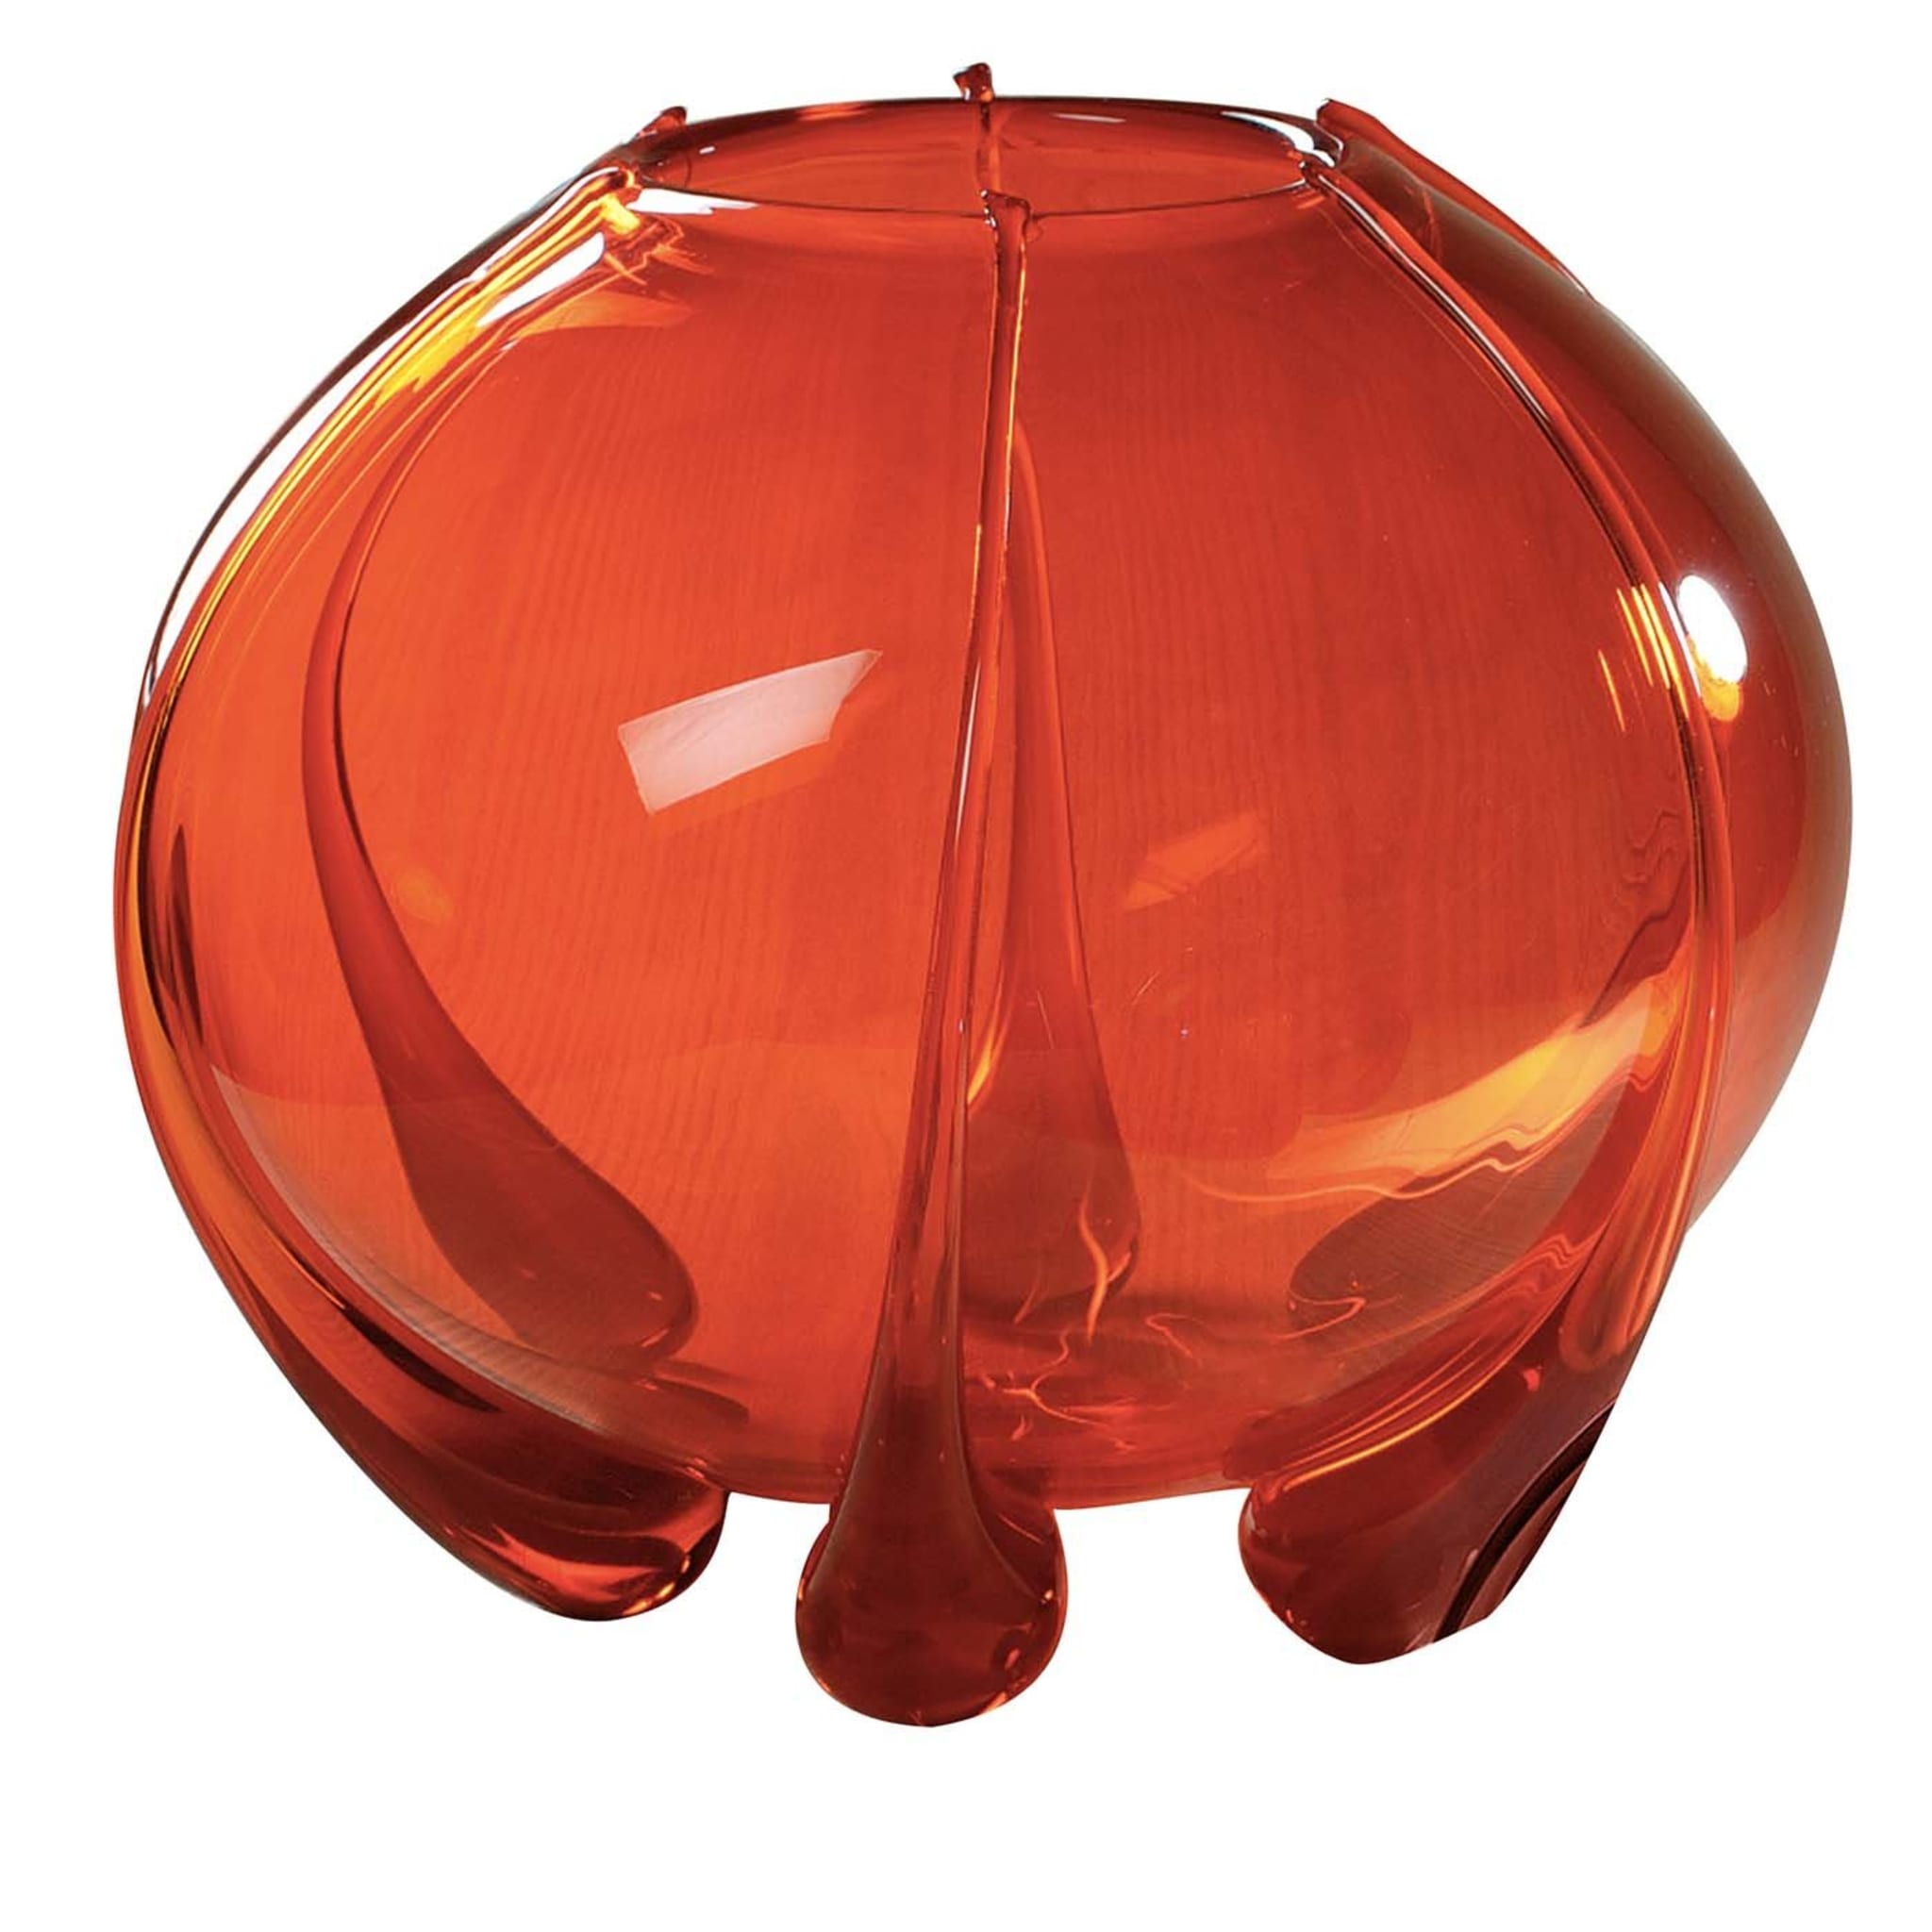 Bolle Große Orange Vase - Hauptansicht